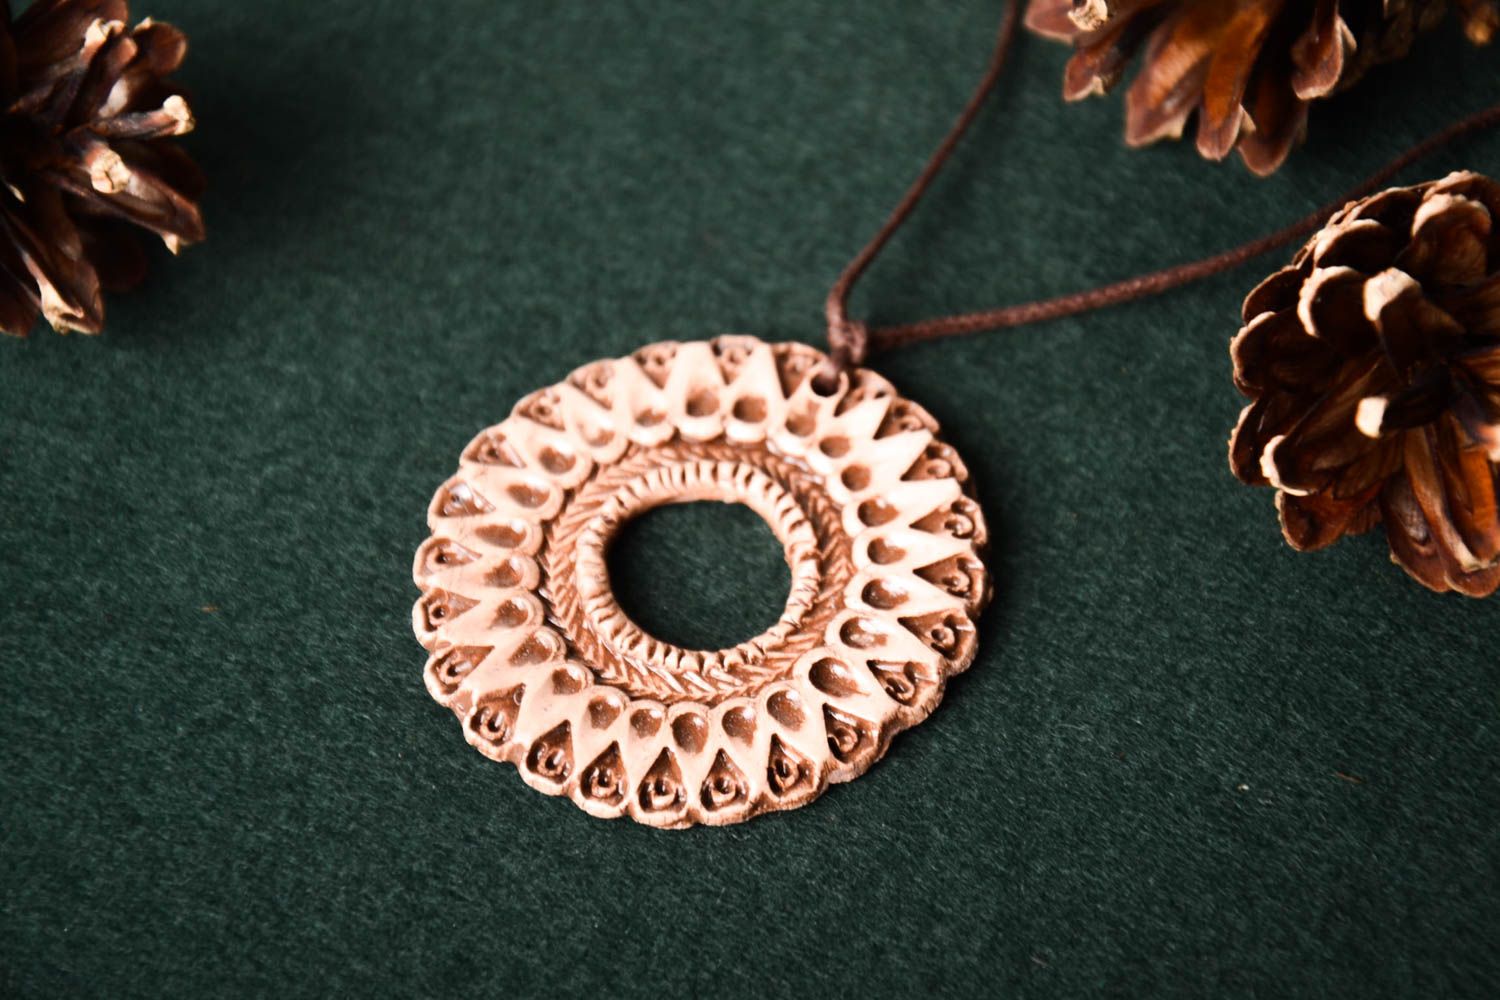 Handmade pendant ceramic neck accessory designer necklace stylish women gift photo 1